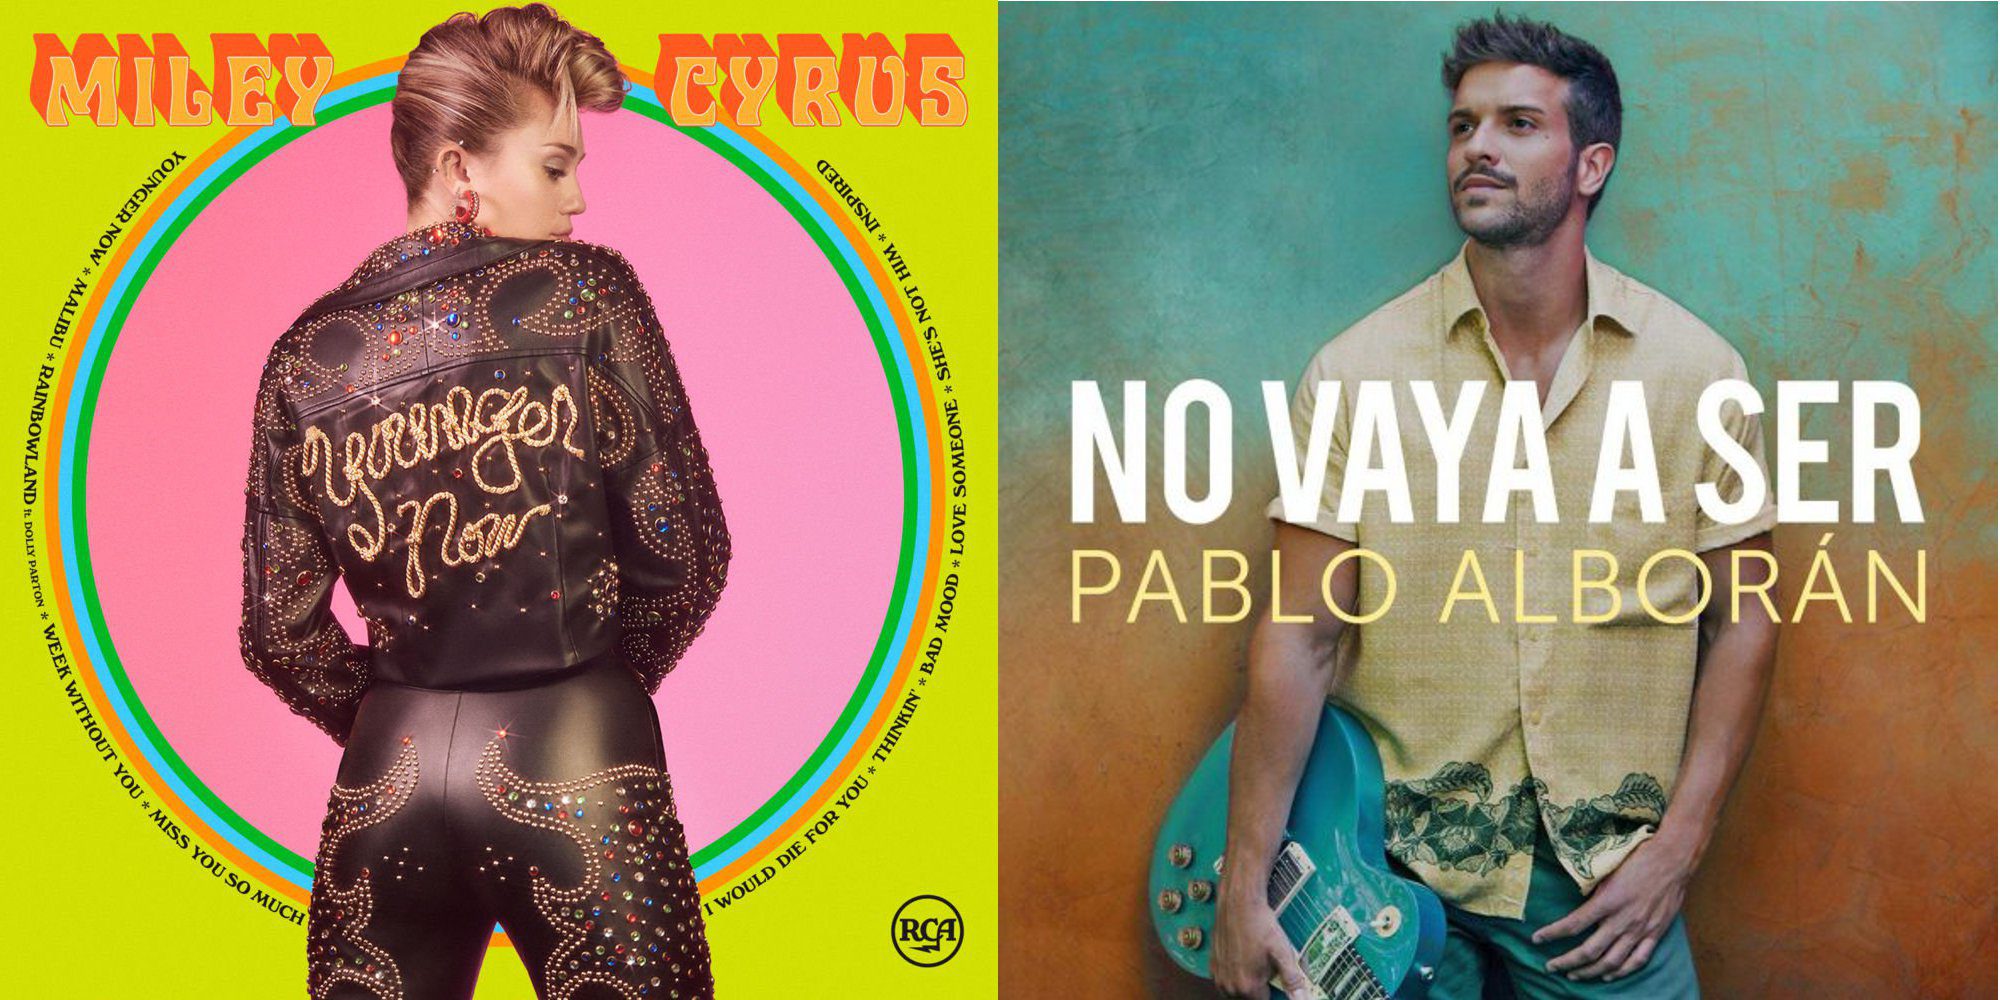 Pablo Alborán, Miley Cyrus y La Oreja de Van Gogh son los artistas encargados de renovar la industria musical